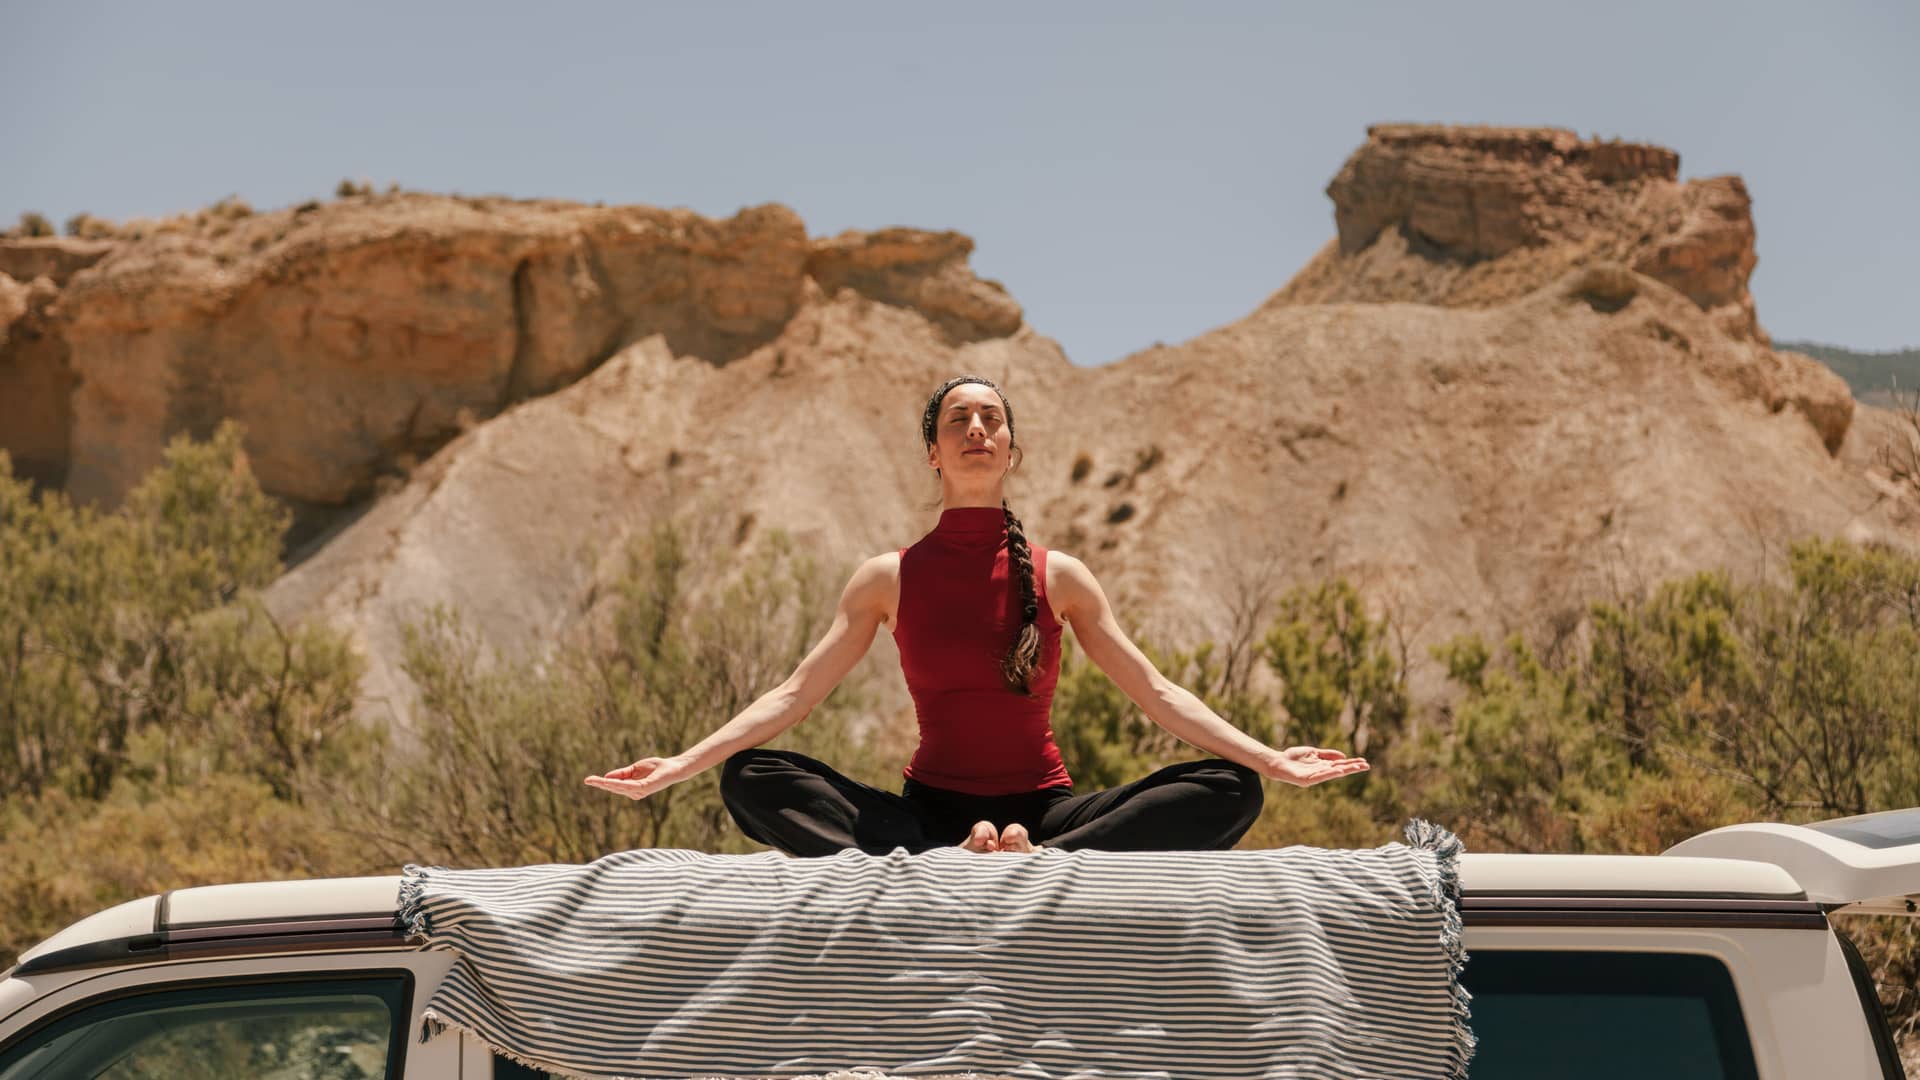 Mujer practicando yoga en el techo de una furgoneta en el desierto tras conseguir dar de baja seguro